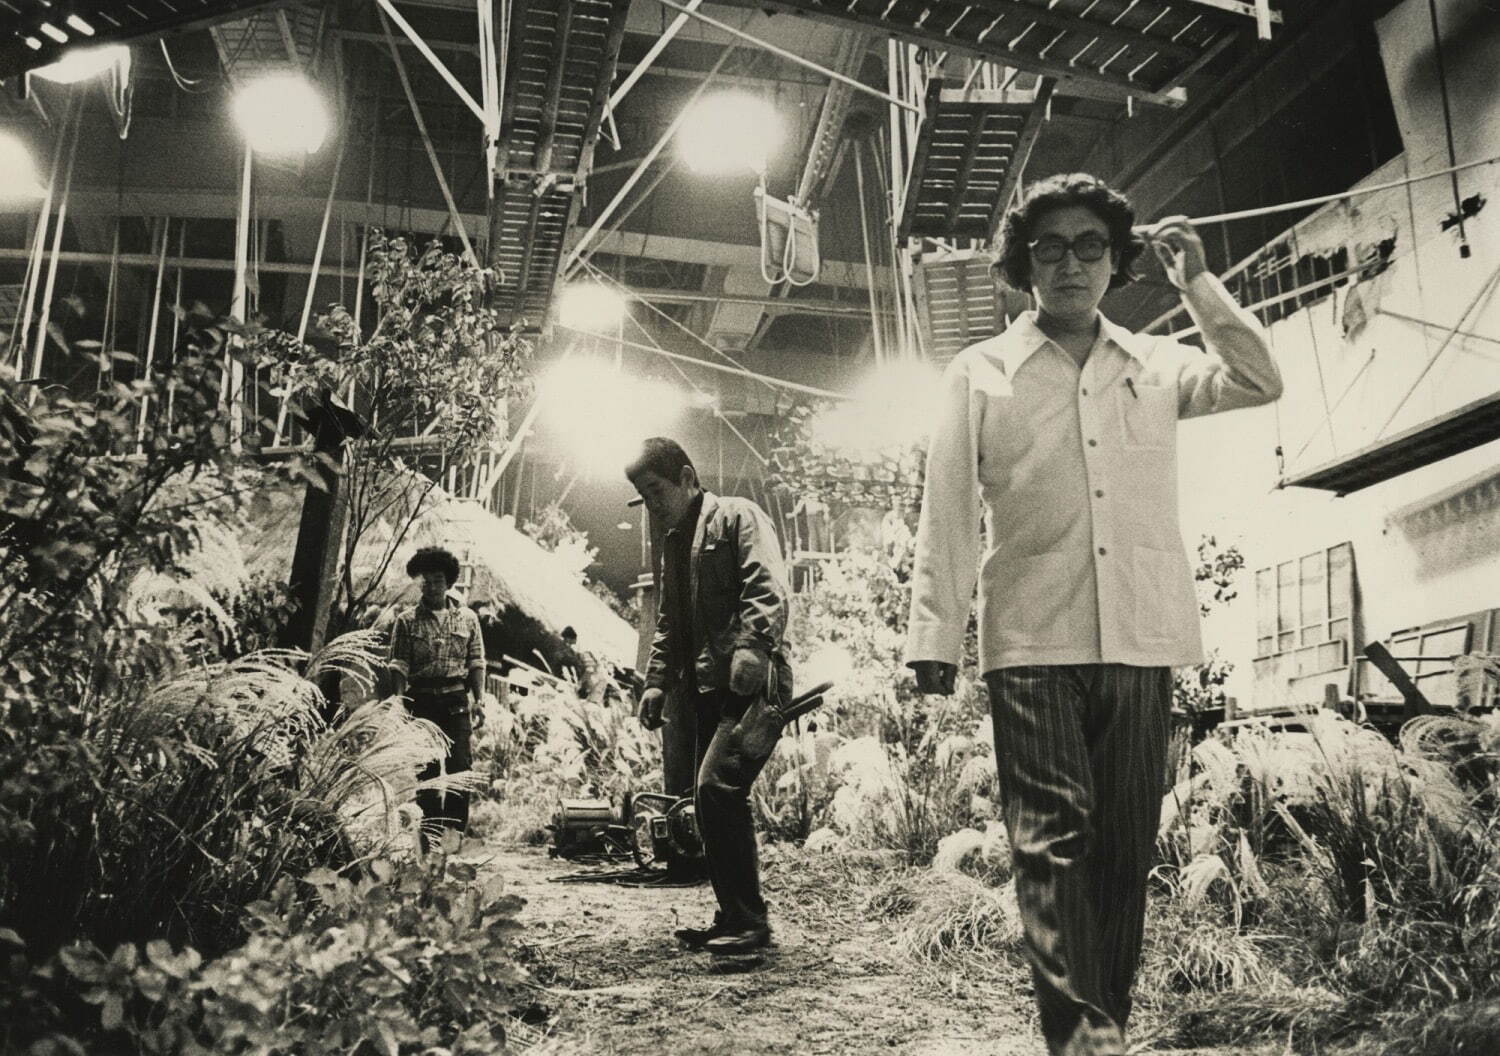 『愛の亡霊』 1978年 撮影スナップ
©︎大島渚プロダクション